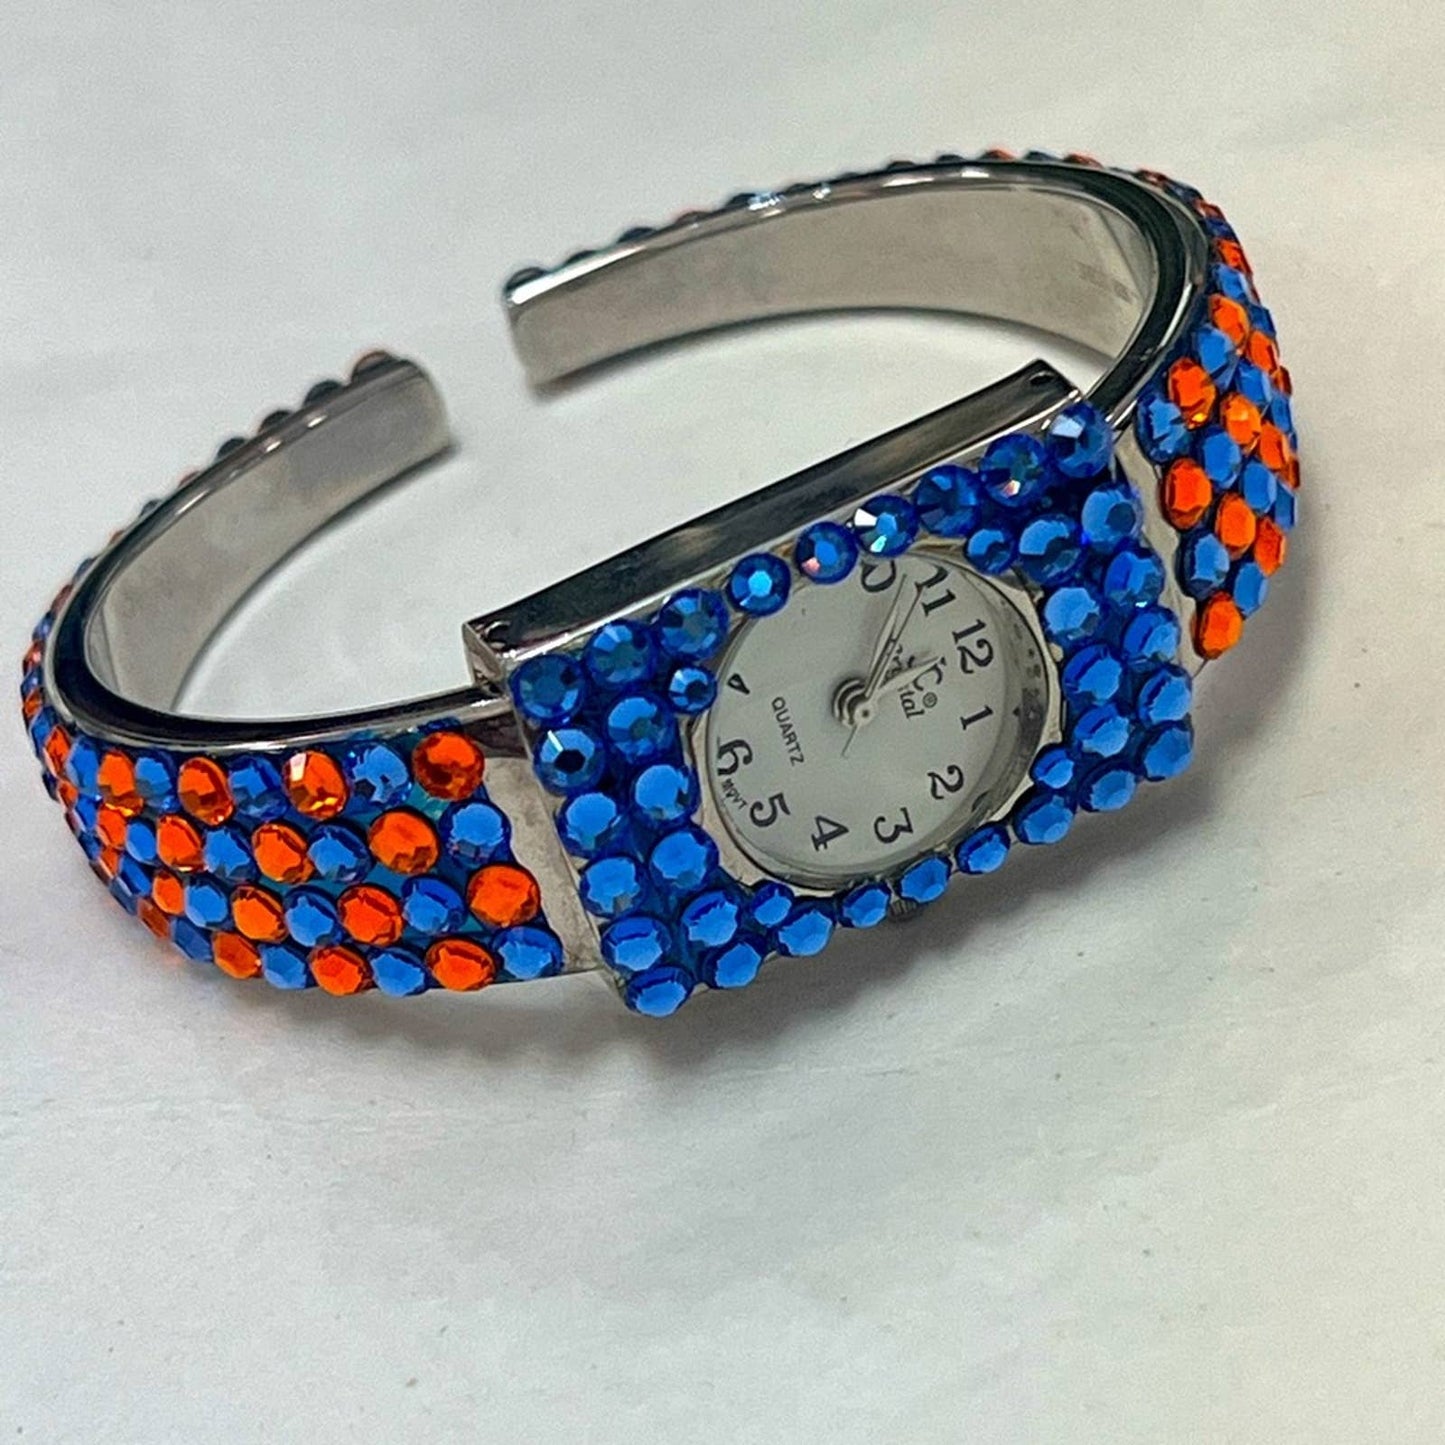 JC CRYSTAL Orange & Blue Crystal Cuff Watch